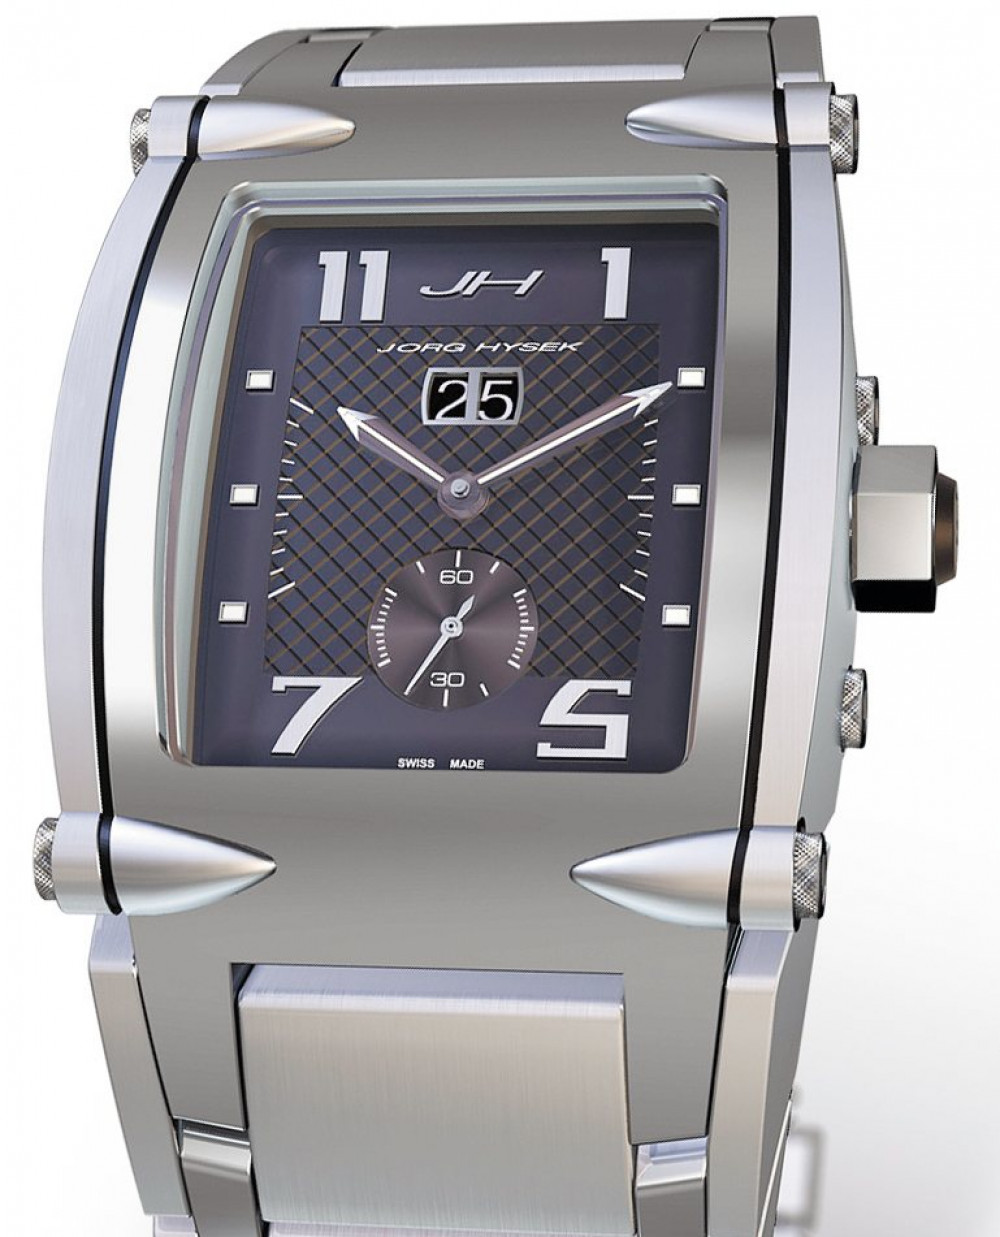 Zegarek firmy Hysek, model V-King Hercules